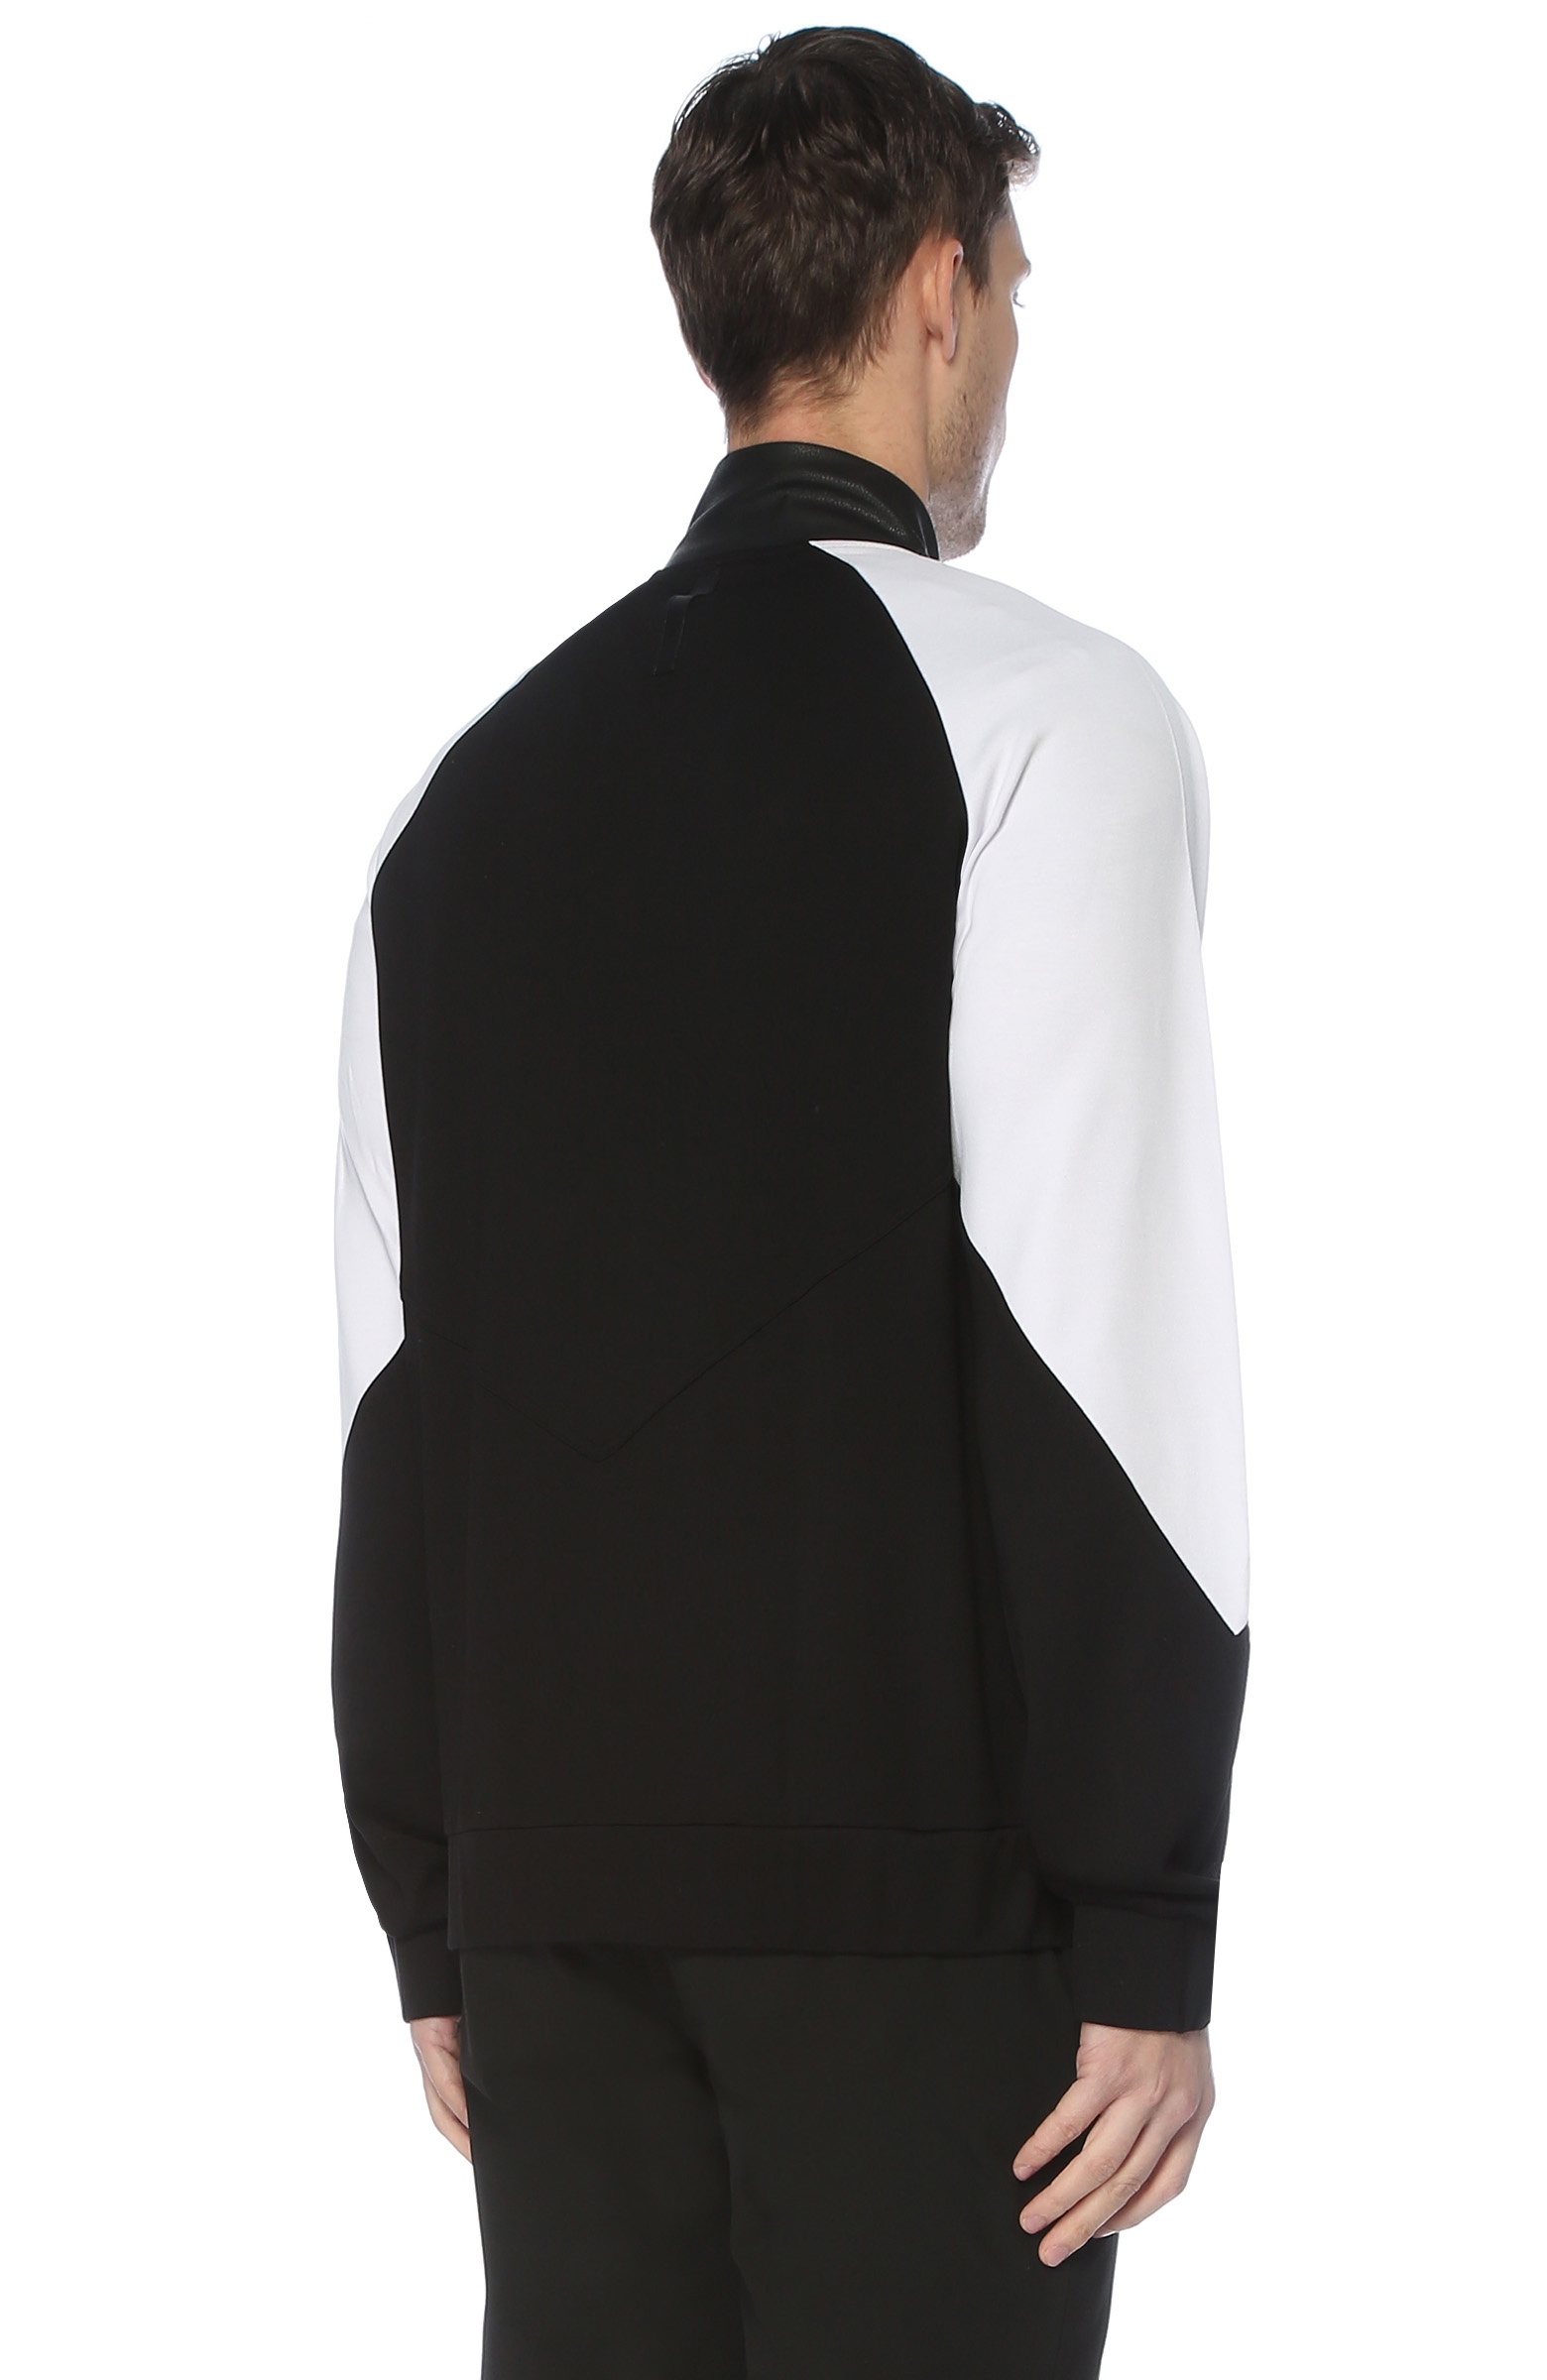 BJK x NetWork Siyah Beyaz Yakası Fermuarlı Sweatshirt